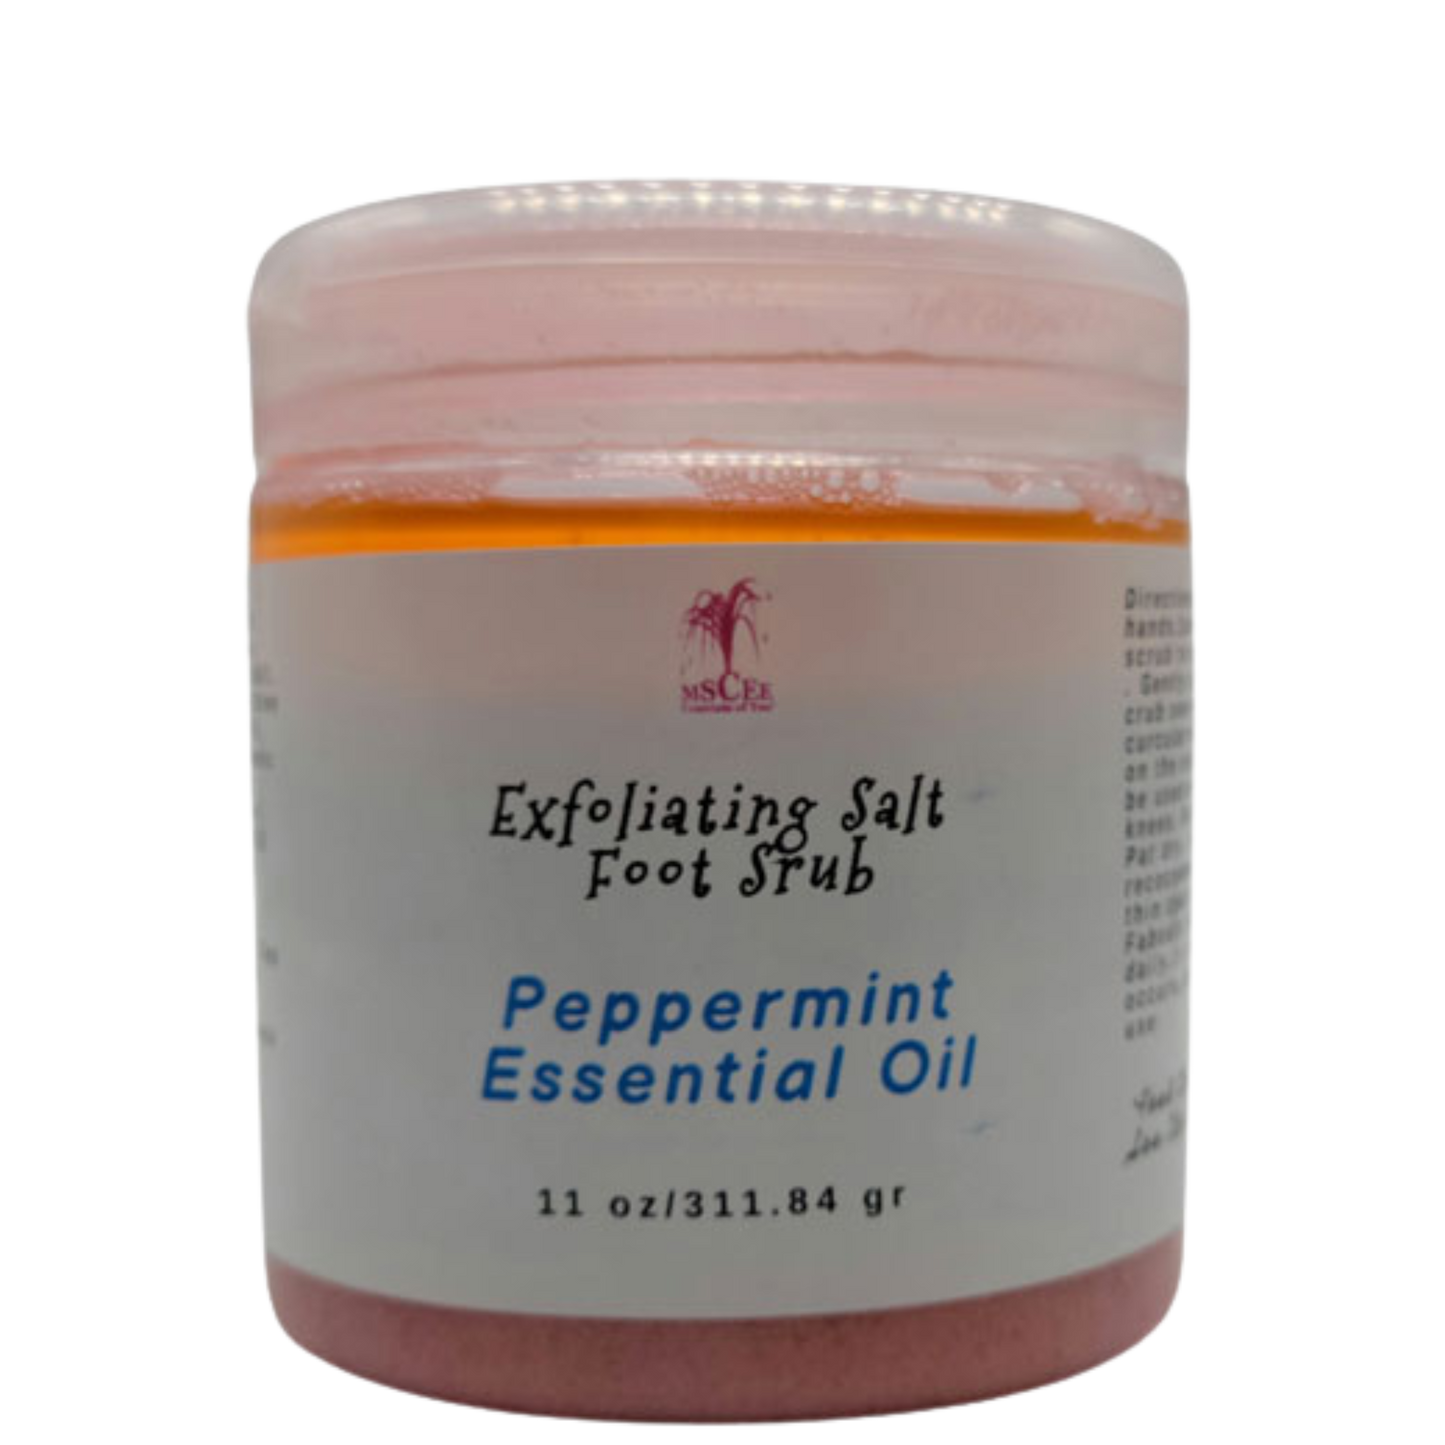 Exfoliating  sea salt foot scrub with peppermint essential oil  11 oz